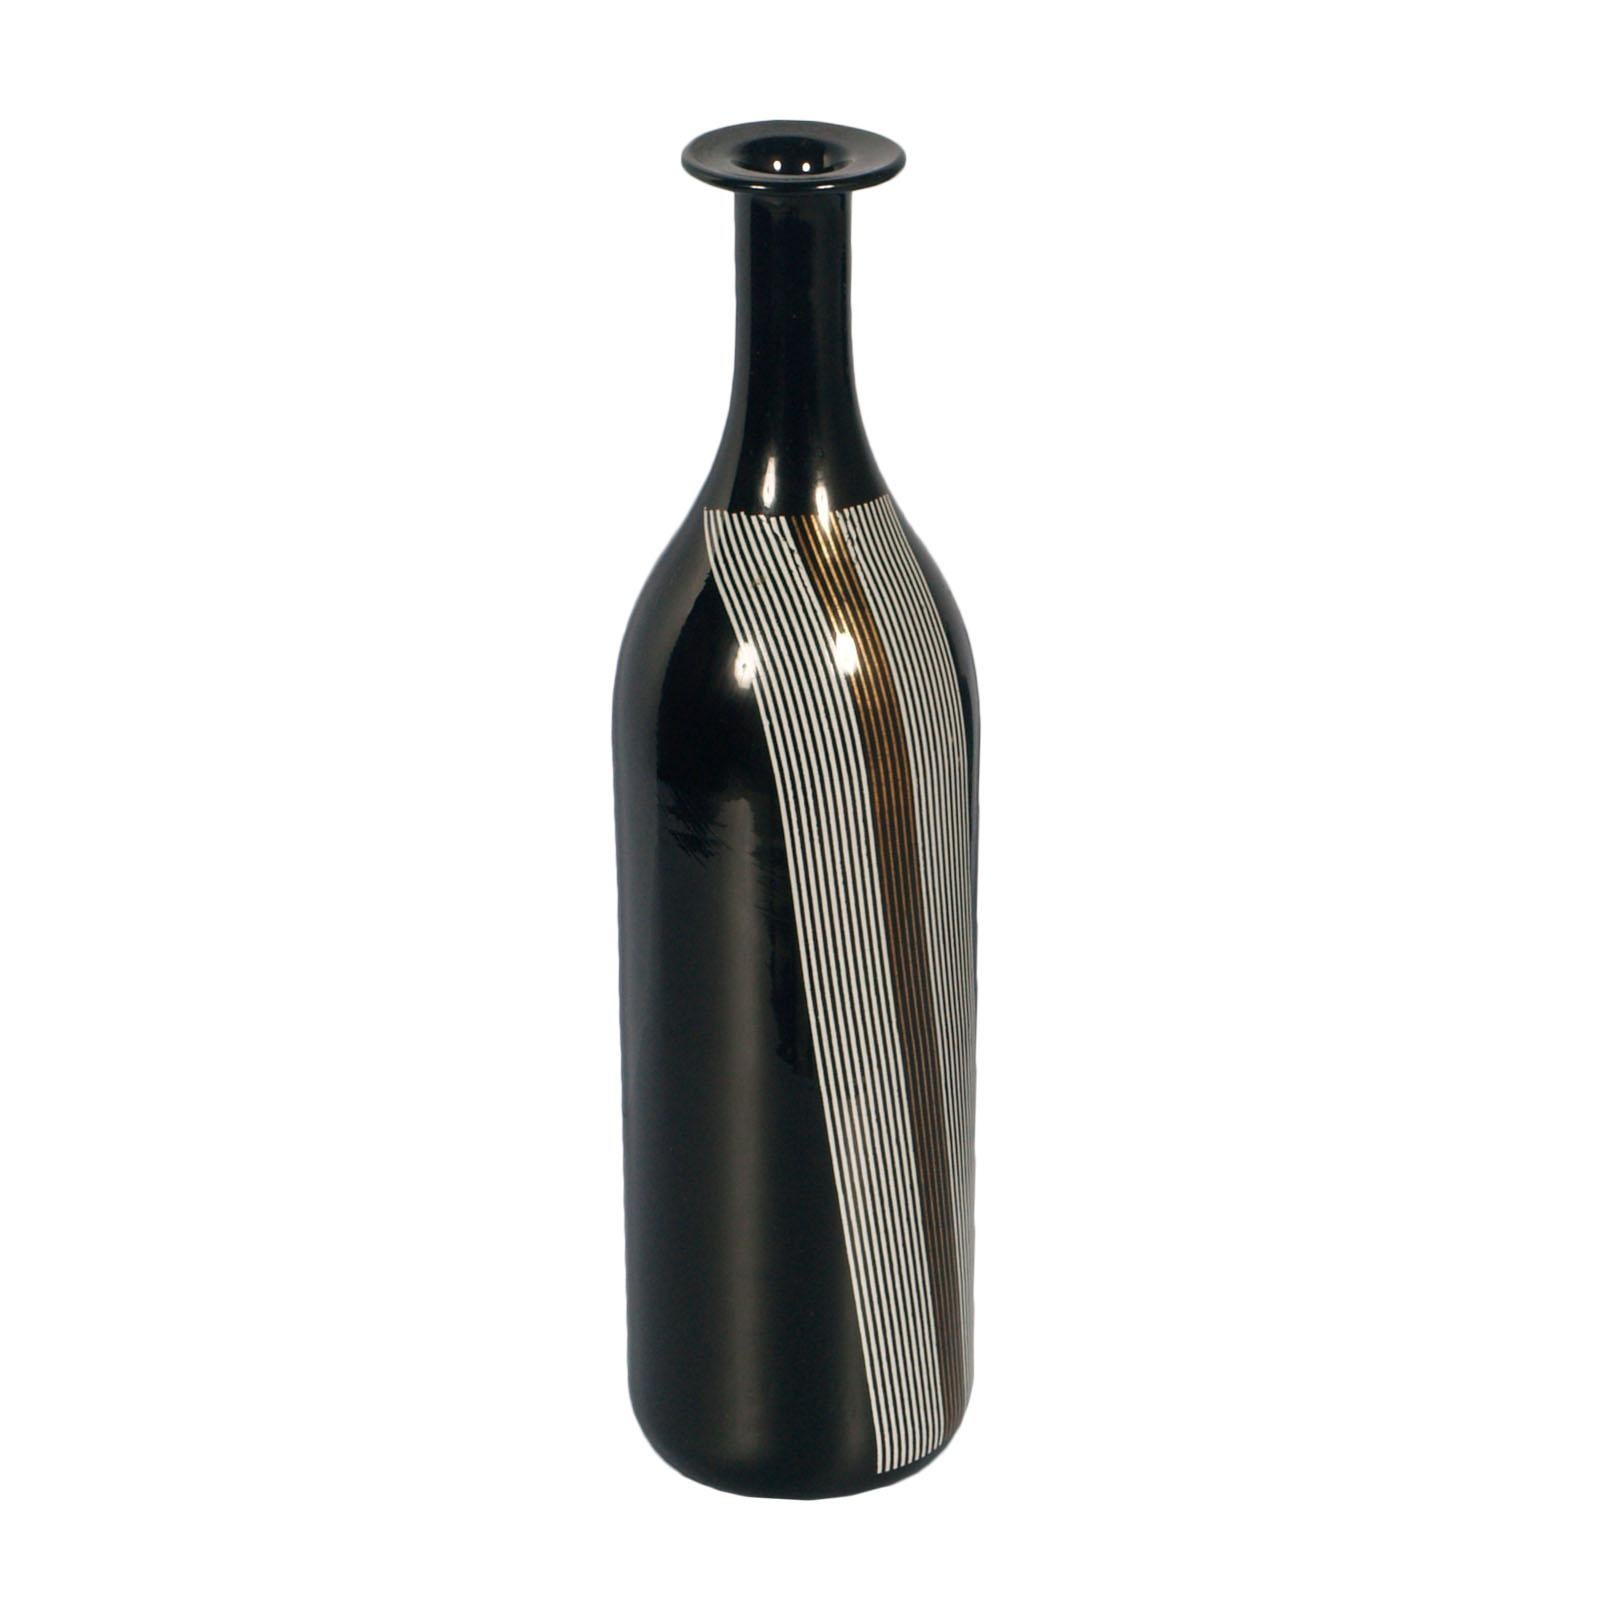 Sie können separat verkauft werden
Mid-Century Modern Set Vasen Tapio Wirkkala für Venini in geblasenem schwarzem Muranoglas zuzuschreiben.

Über:
Diese 1968 von Tapio Wirkkala entworfenen Flaschen sind aus ähnlichem, sanft geschwungenem Glas